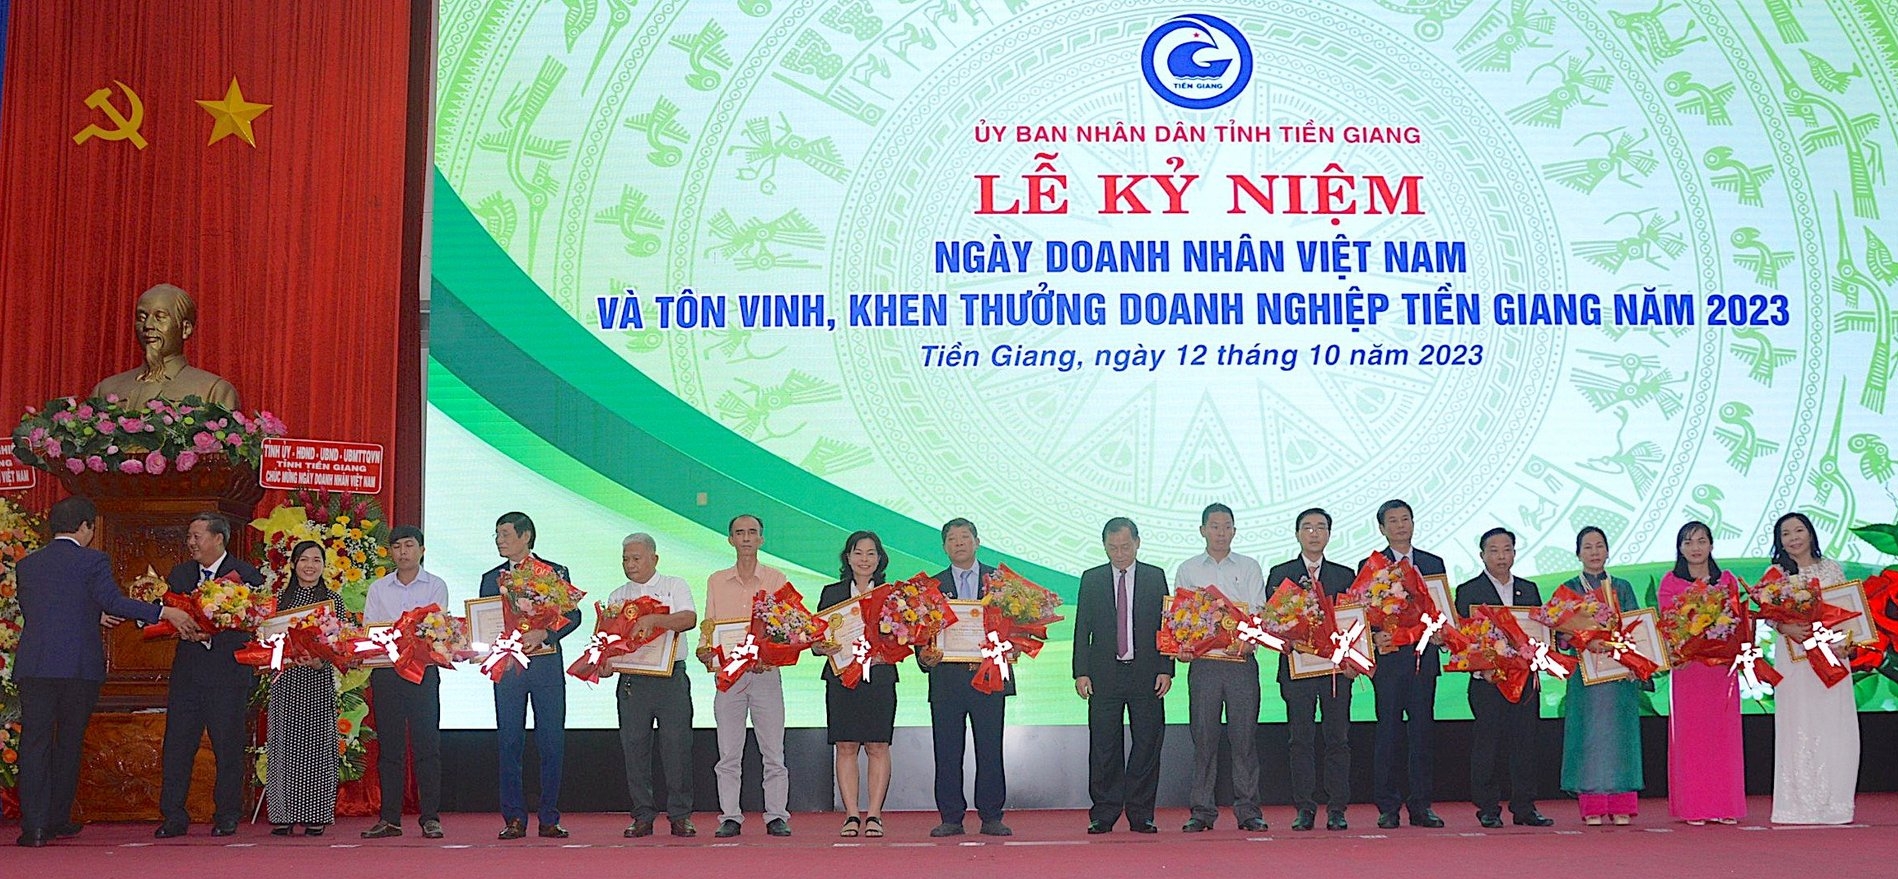 Tiền Giang tôn vinh 30 doanh nghiệp tiêu biểu năm 2023 nhân Ngày Doanh nhân Việt Nam (13/10). Ảnh: Minh Đảm.